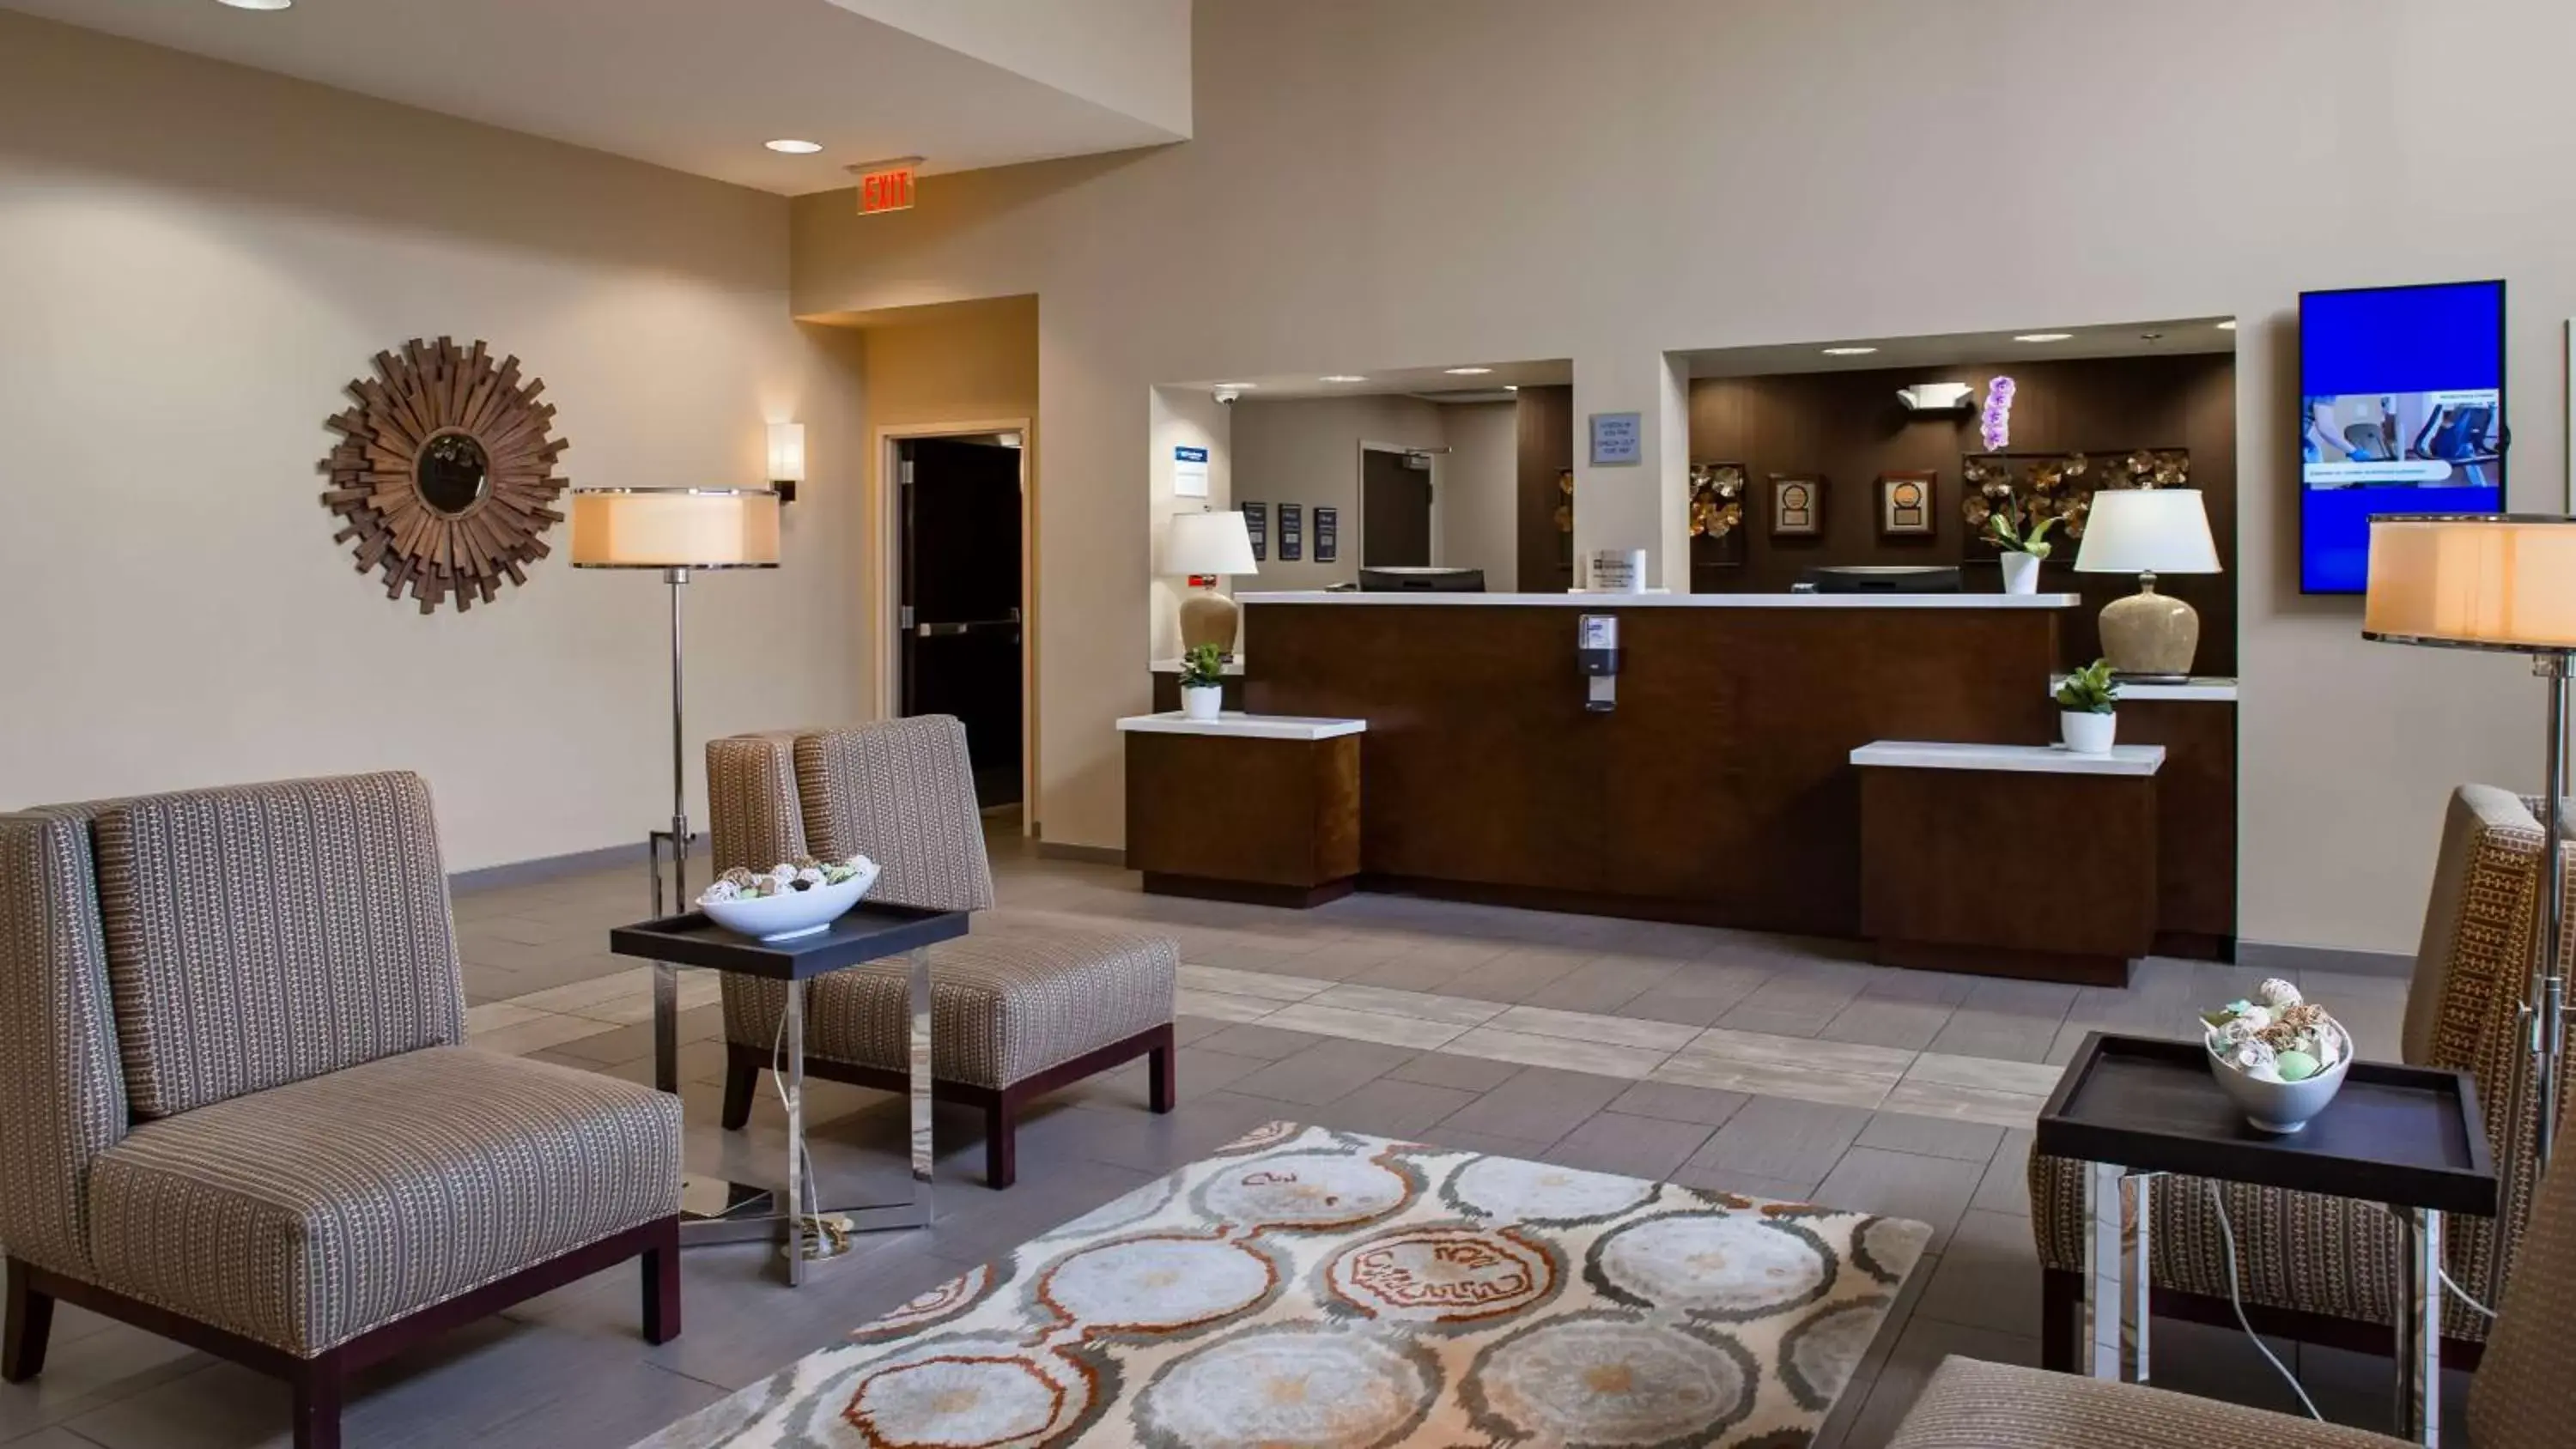 Lobby or reception, Lobby/Reception in Best Western Plus Thornburg Inn & Suites